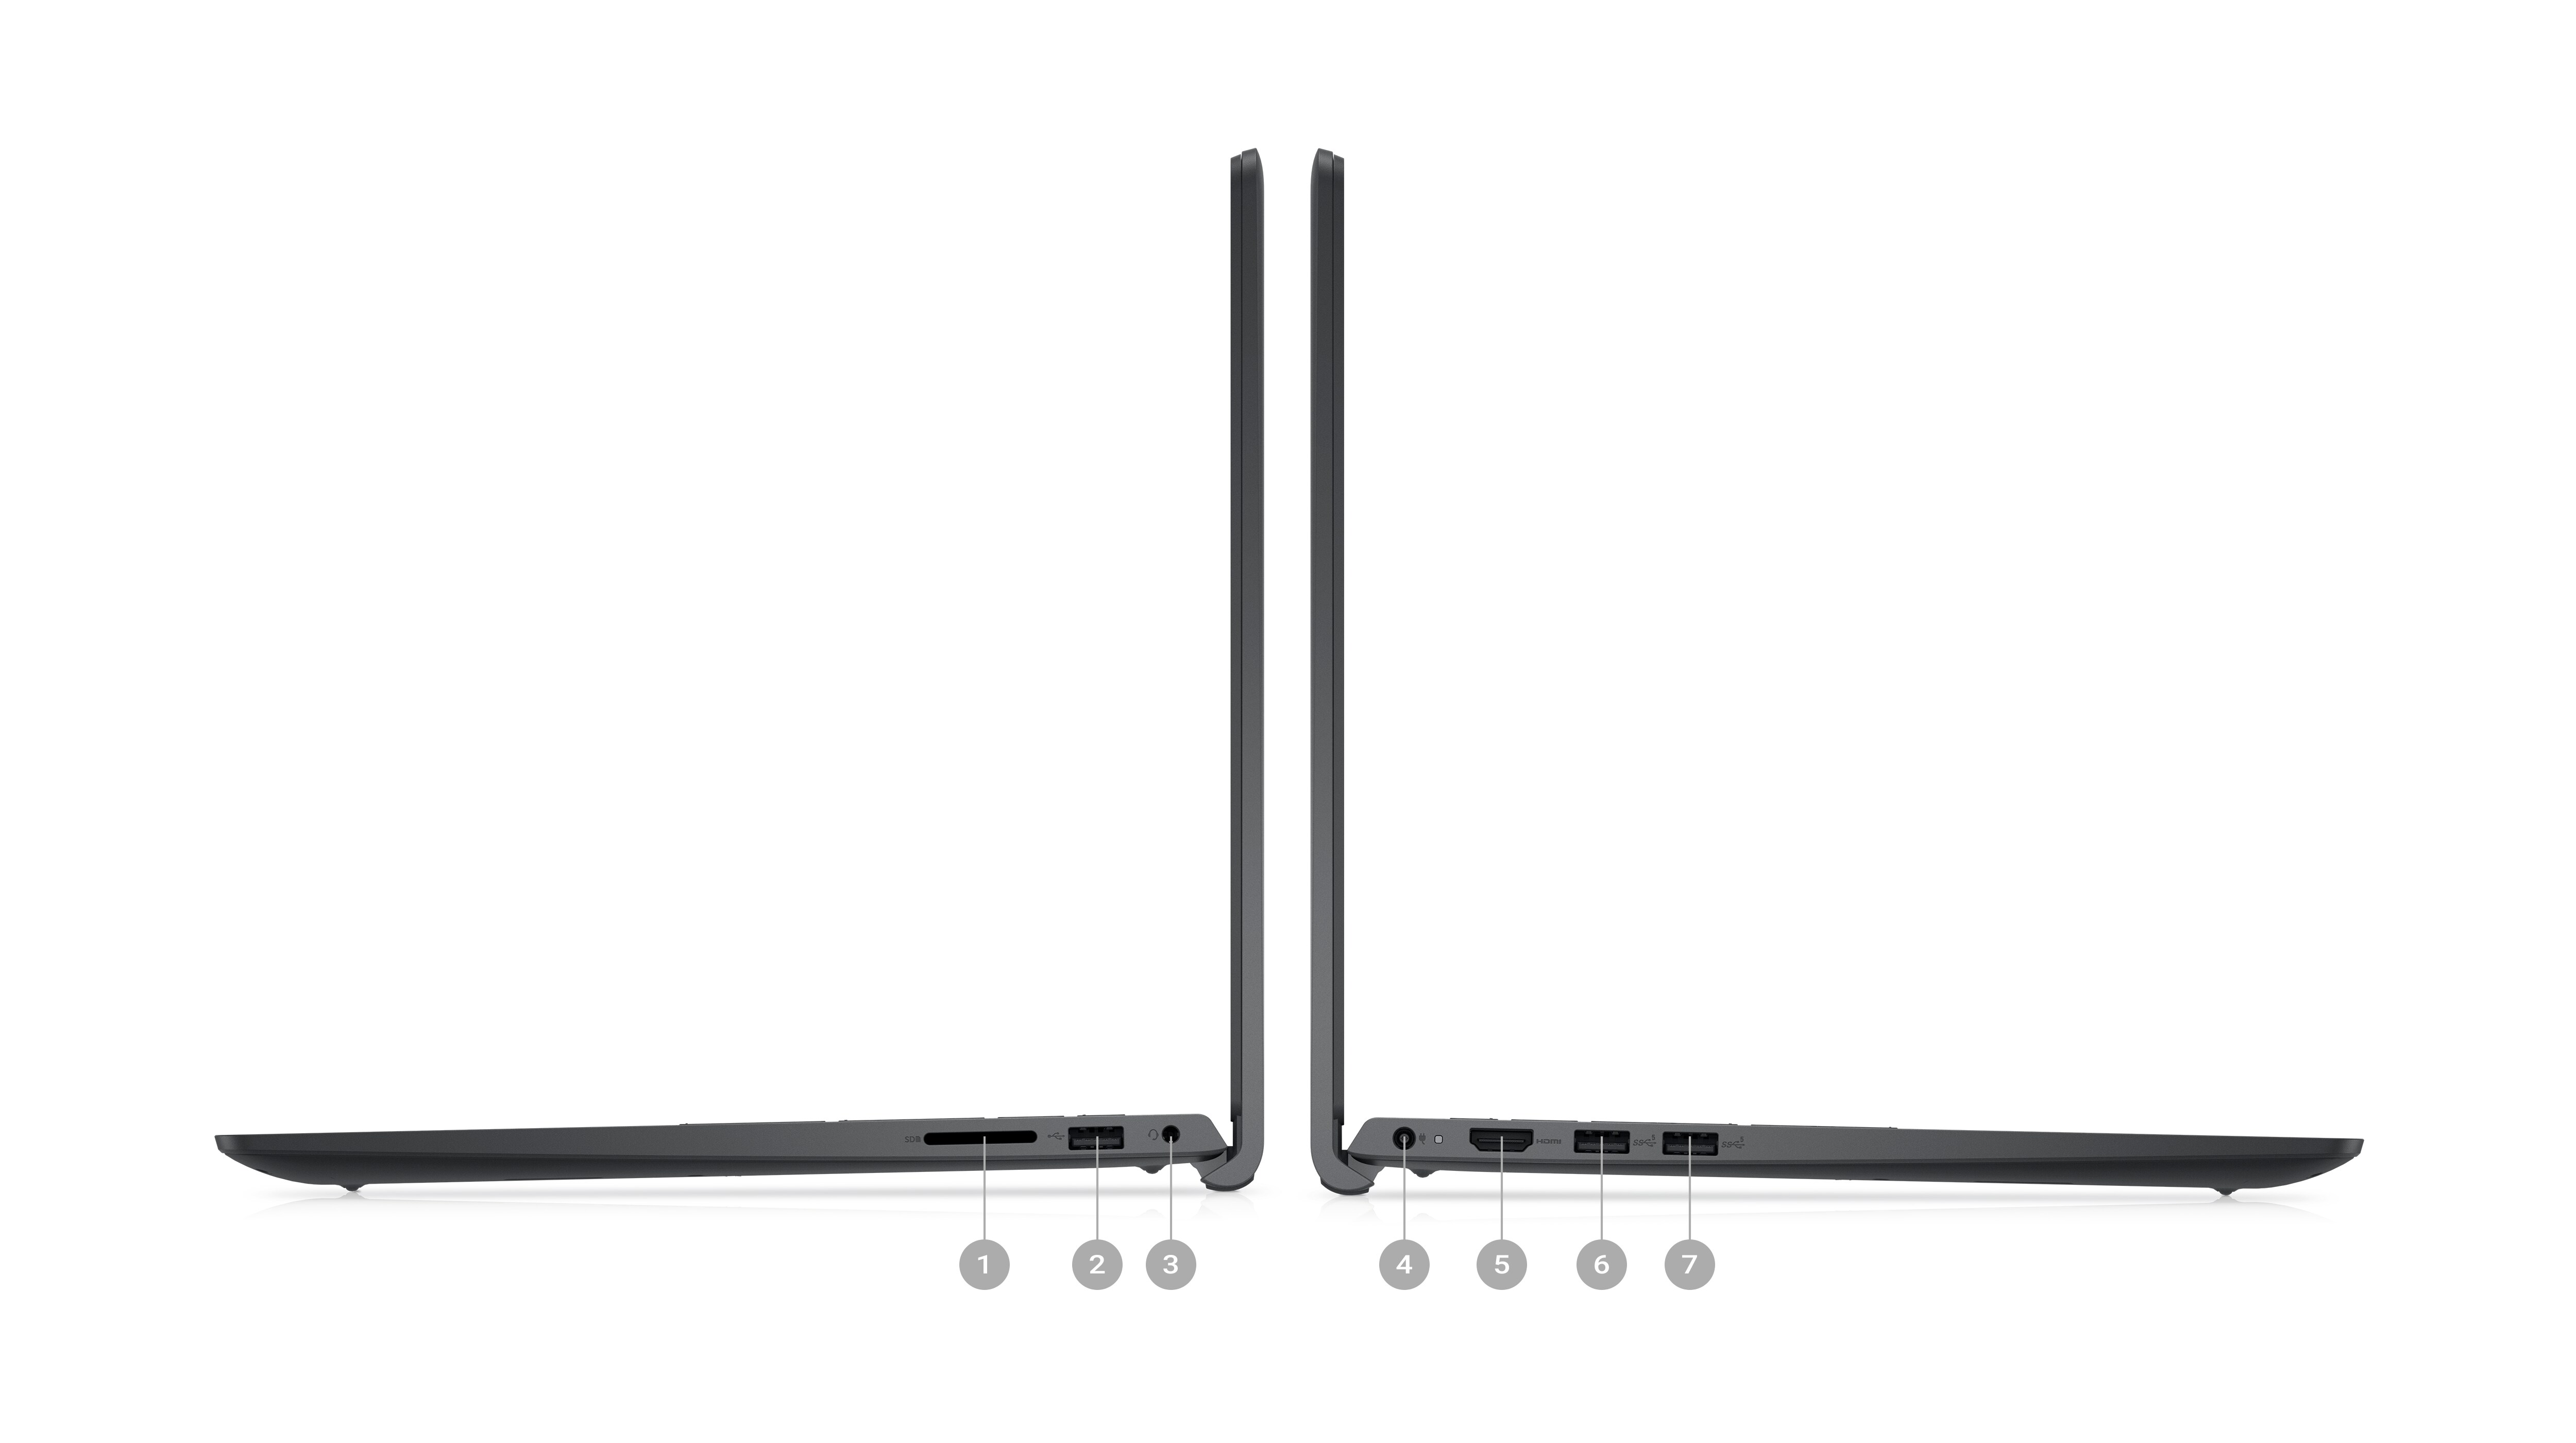 Image de deux ordinateurs portables Dell Inspiron 15 3521 vus de côté avec des numéros de 1 à 7 qui indiquent les ports du produit.